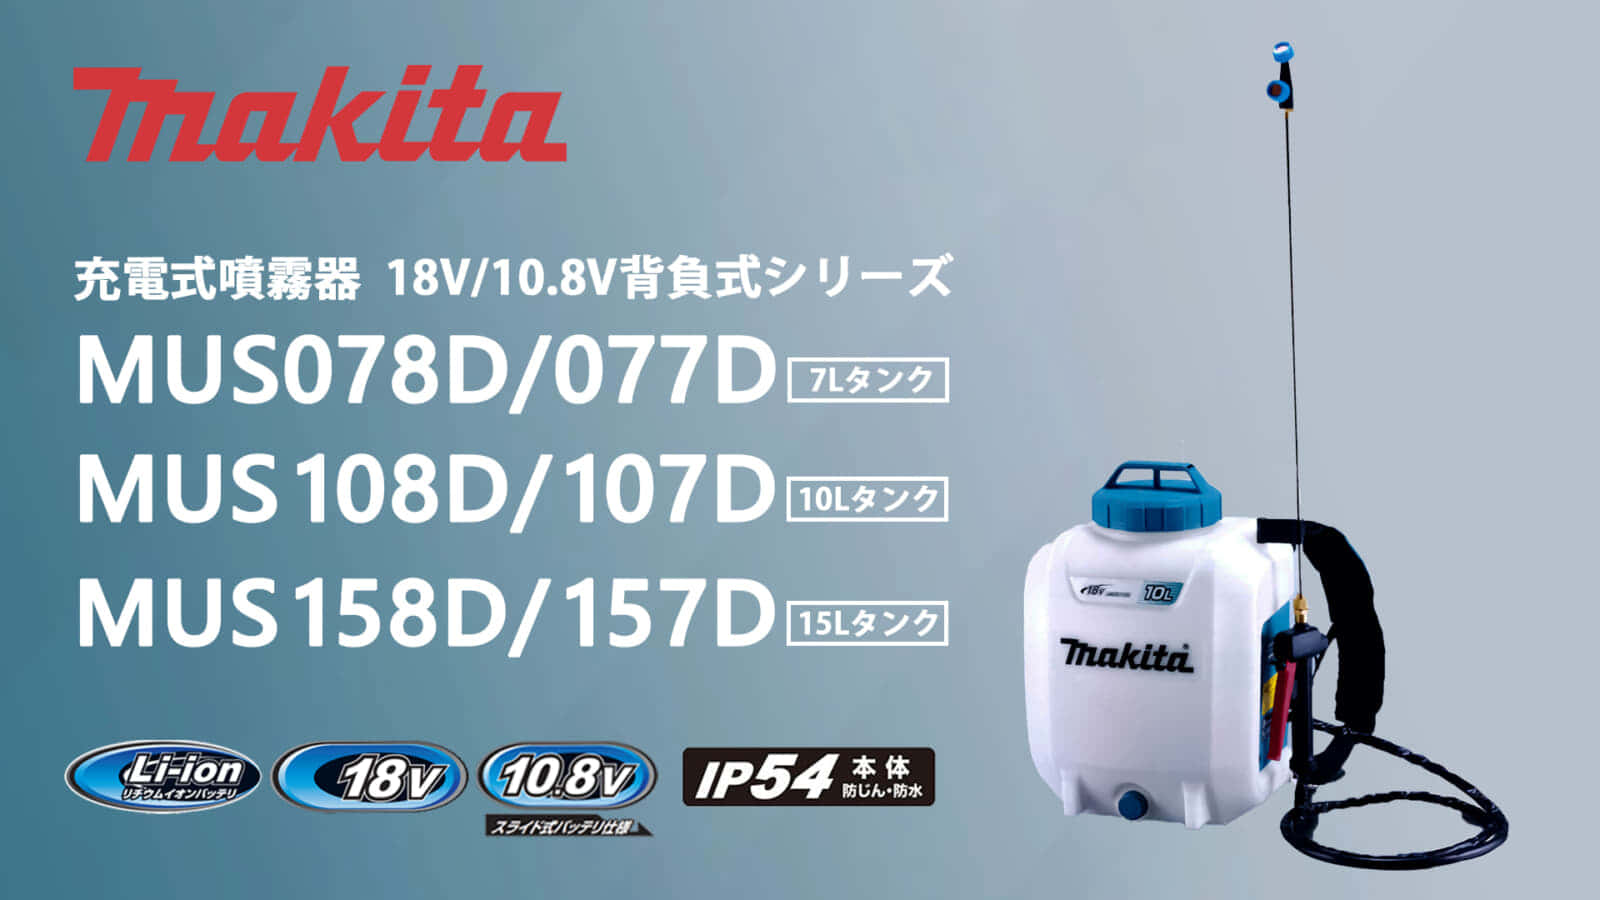 マキタ 背負い式の充電式噴霧器シリーズを発売、本格的な噴霧作業に対応する大容量タイプ